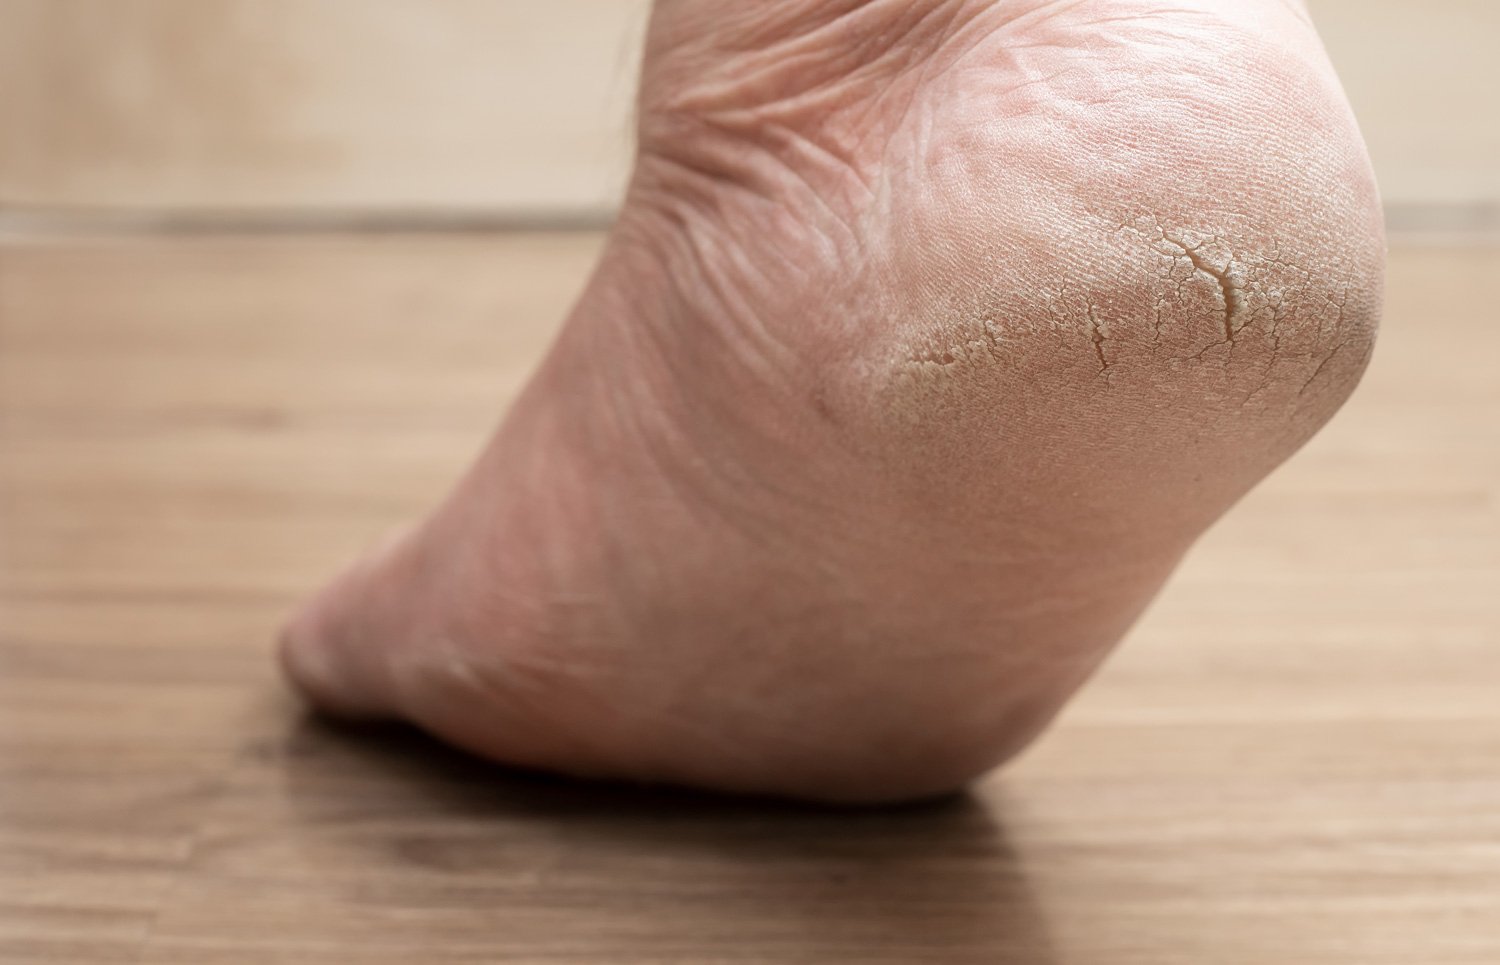 सूखी और फटी एड़ियों का ईलाज || Treatment of Dry and Cracked Heels (In  HINDI) - YouTube